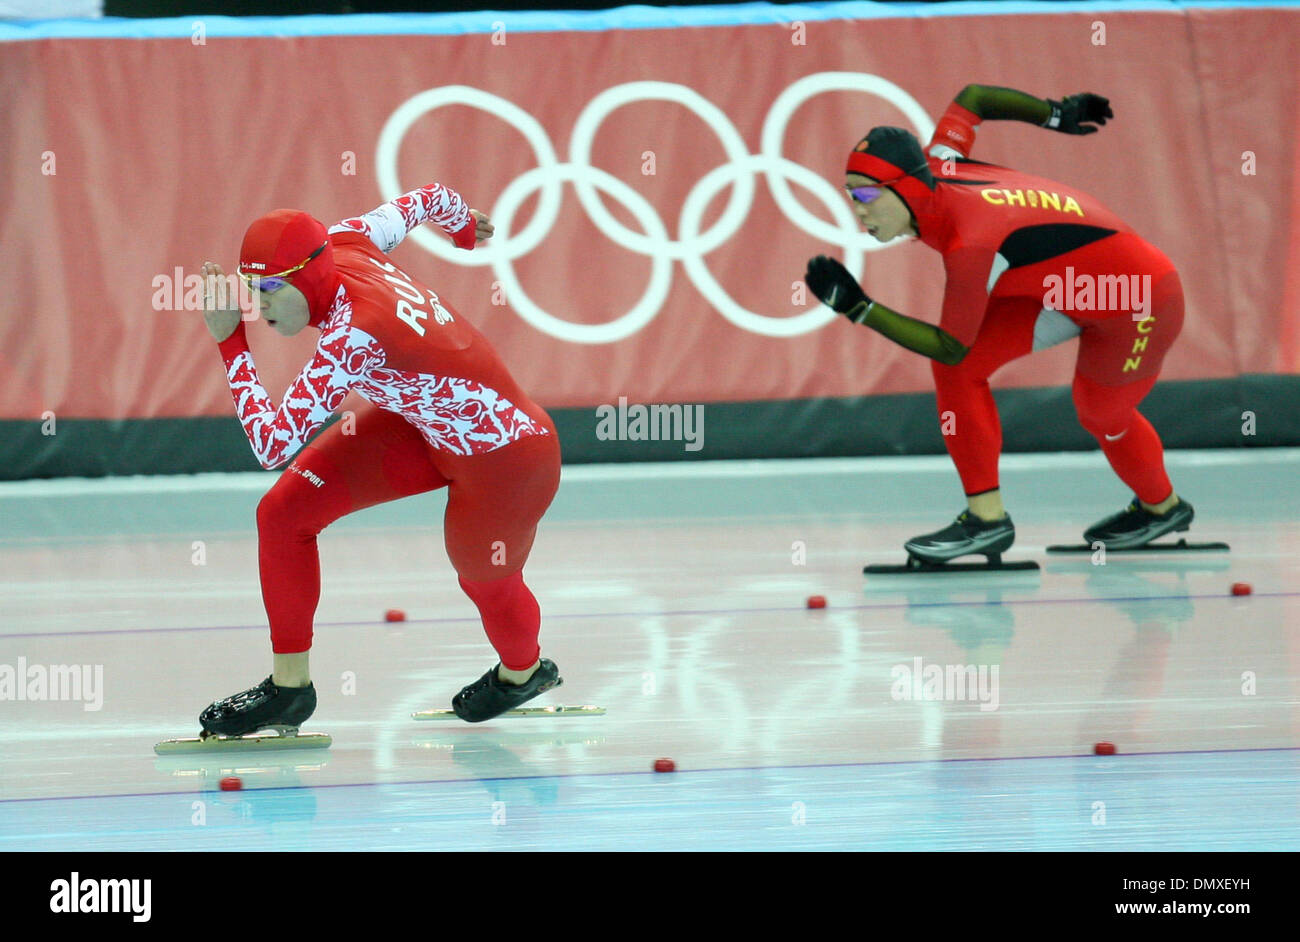 Feb 14, 2006 ; Turin, Italie, Torino 2006 Jeux Olympiques d'hiver de la Russie : Svetlana patiné à l'écart avec le 500 mètres en patinage de vitesse médaille d'mardi soir à l'Oval Lingotto à Turin. Dans cette photo : Svetlana Zhurova conduit la Russie Chine's Manli Wang qui sortent de la première tour dans la deuxième course de la soirée. Zhurova battre Wang et a remporté la médaille d'or, laissant la médaille d'argent pour Wang Banque D'Images